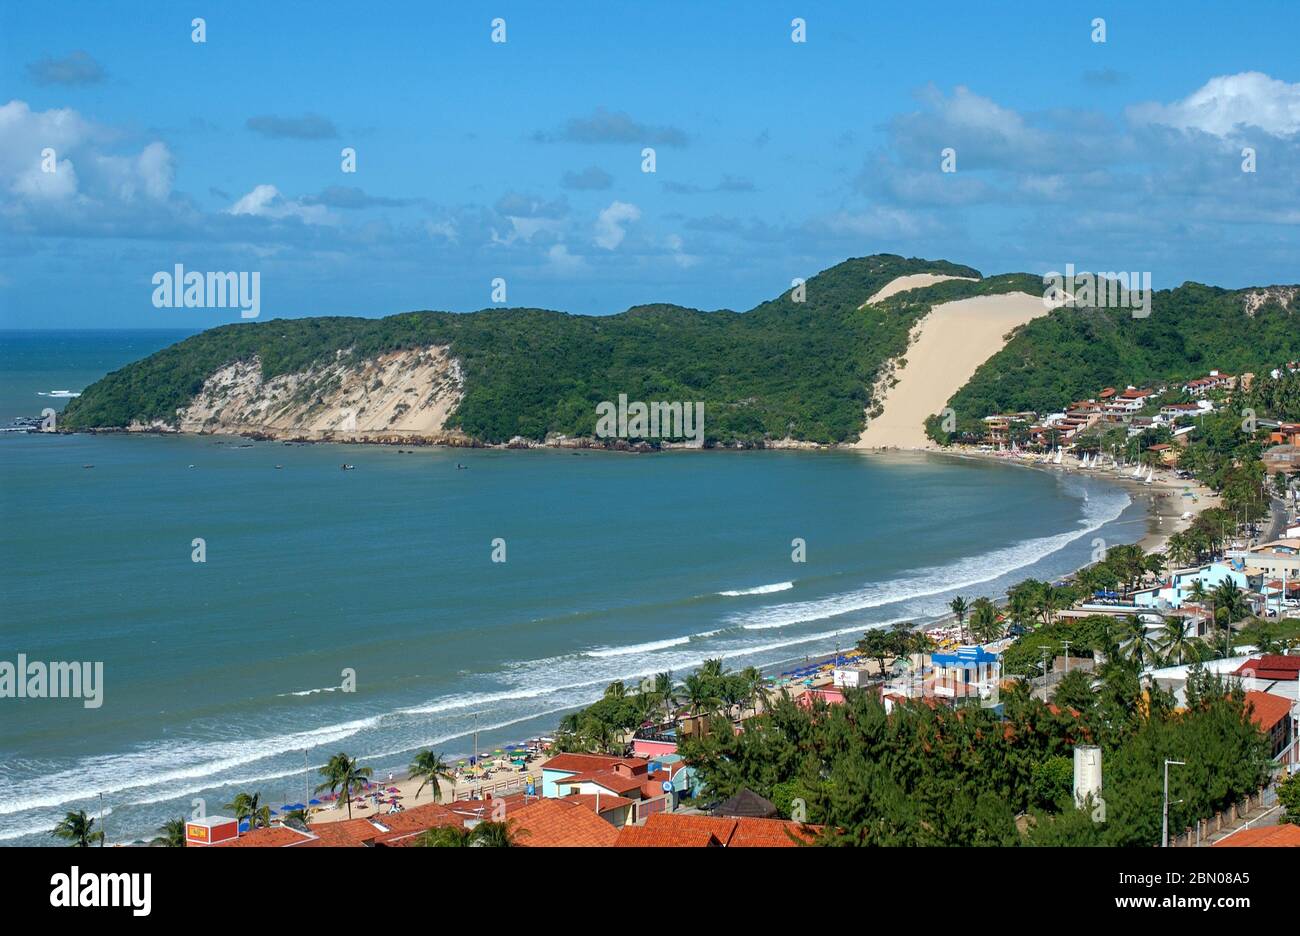 Ponta Negra beach and Morro do Careca, Natal, Rio Grande do Norte on August  14, 2003 Stock Photo - Alamy